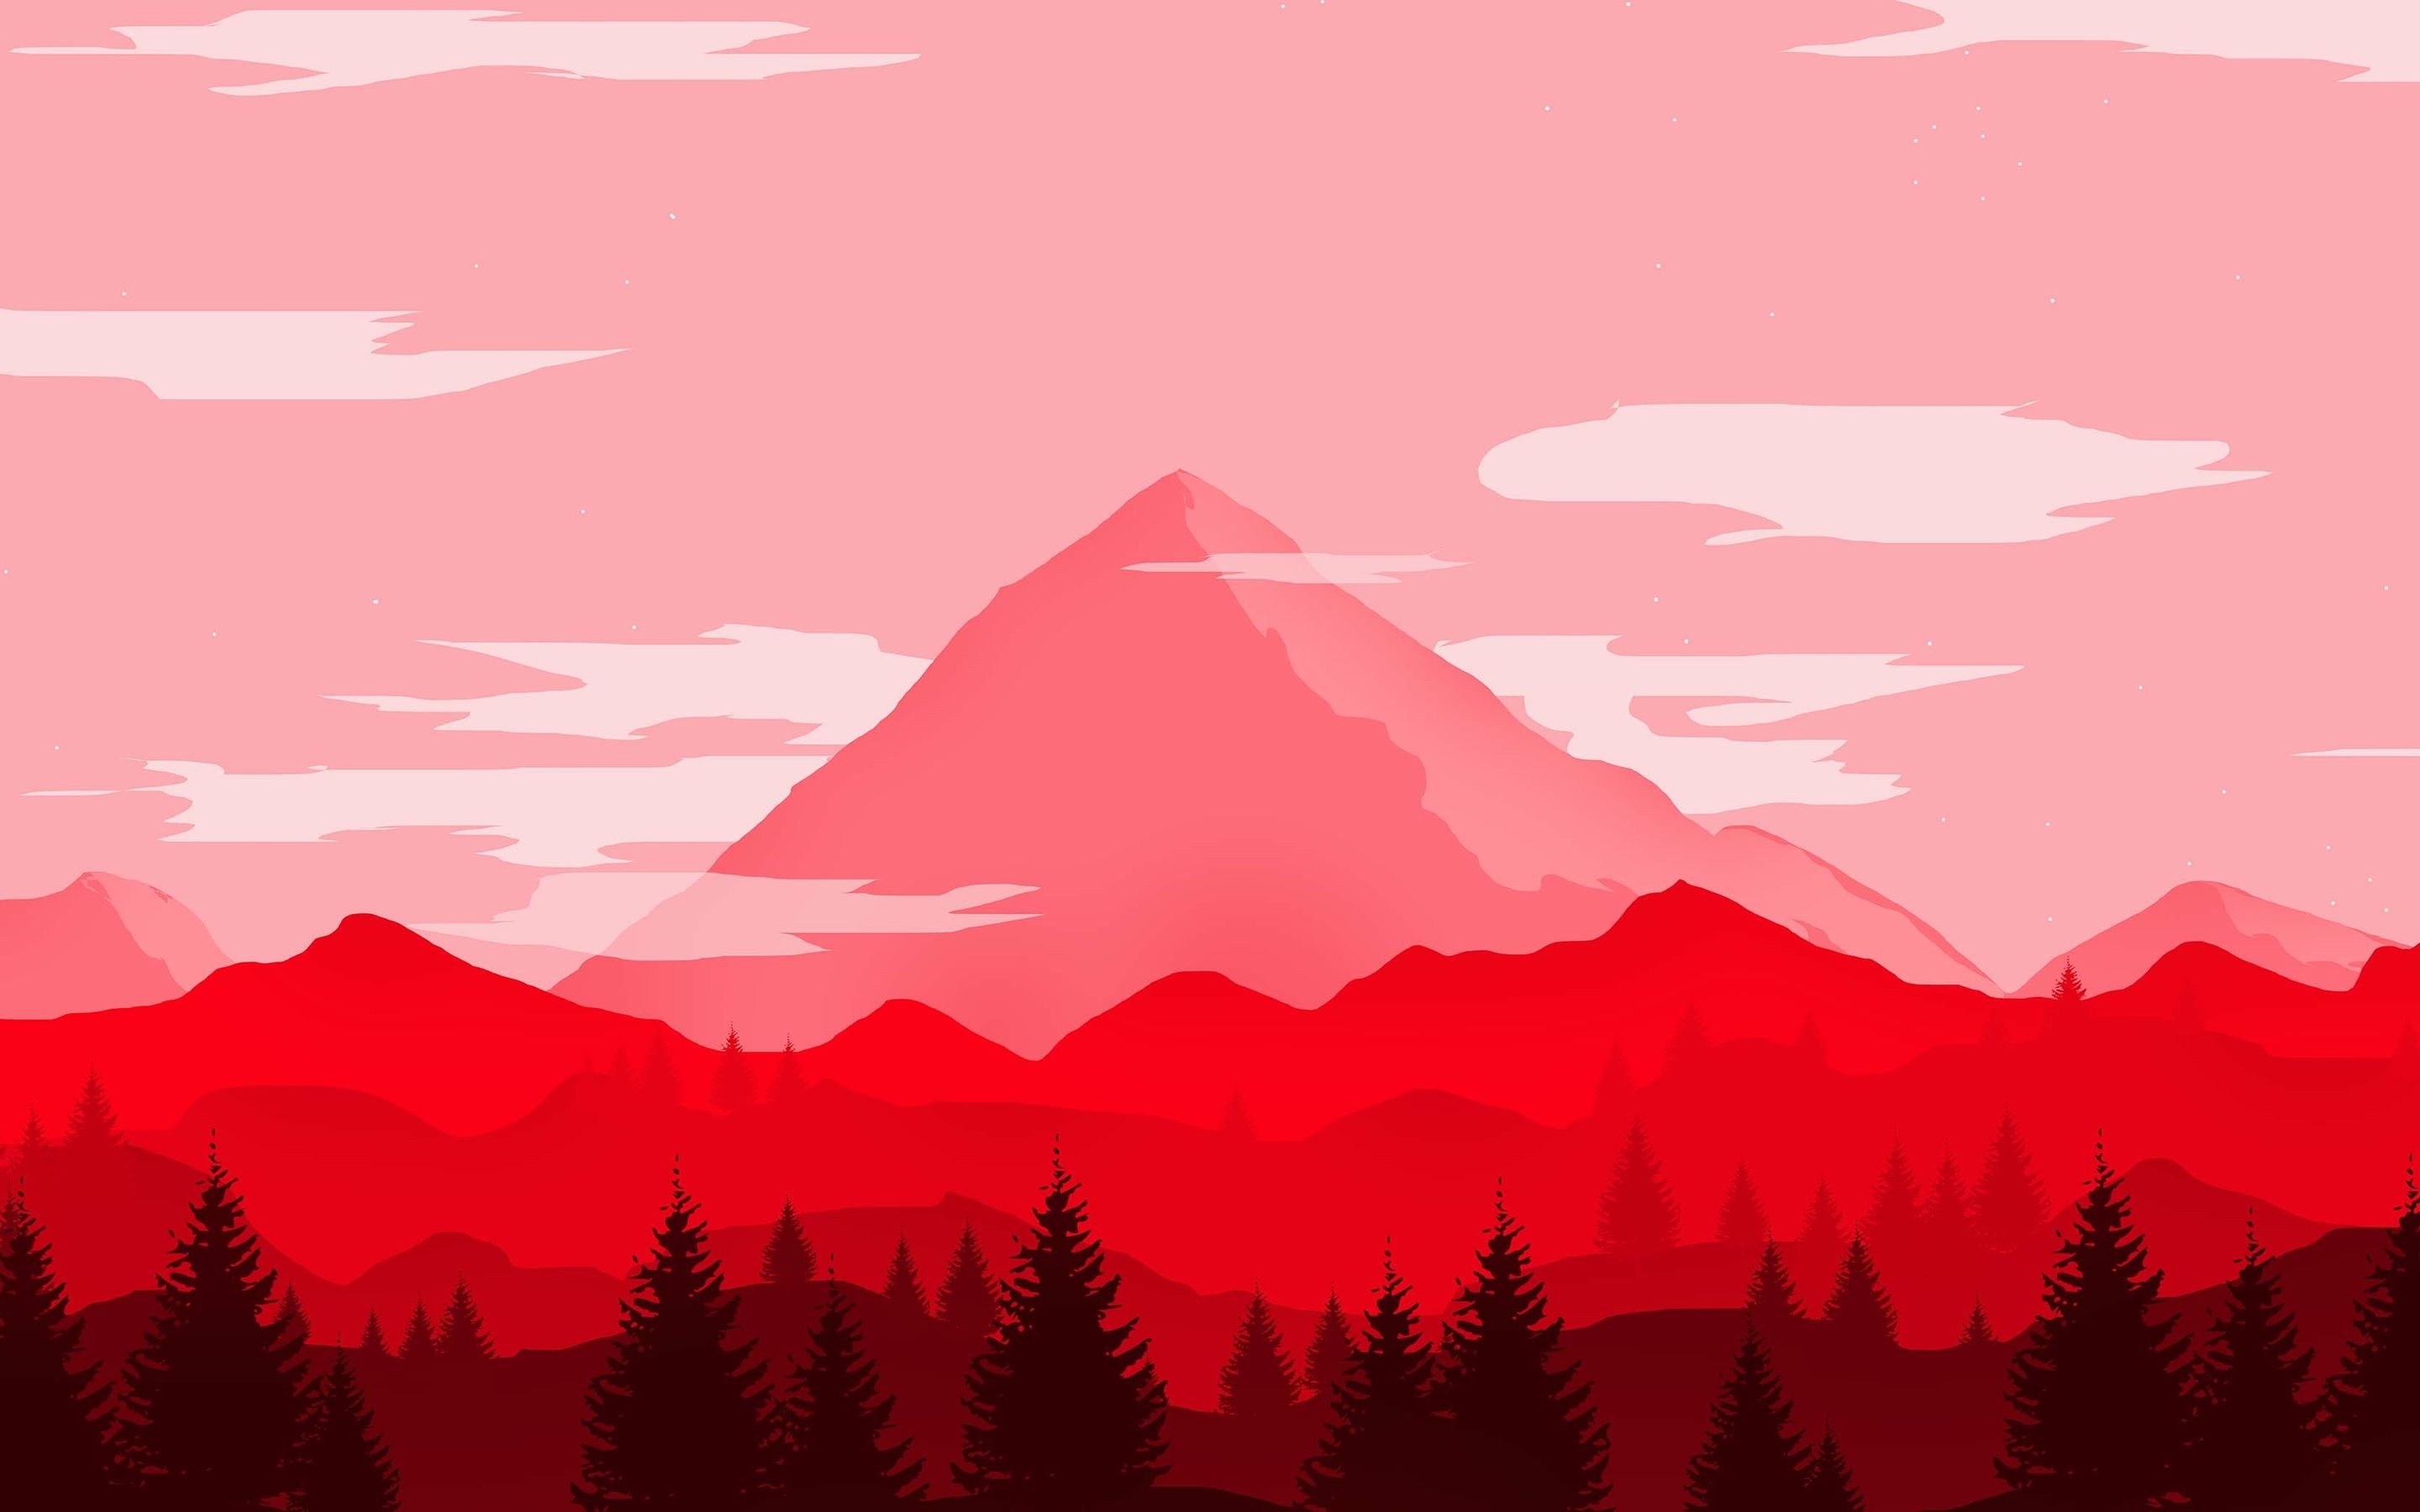 Download wallpaper 4k, mountains, red landscape, artwork